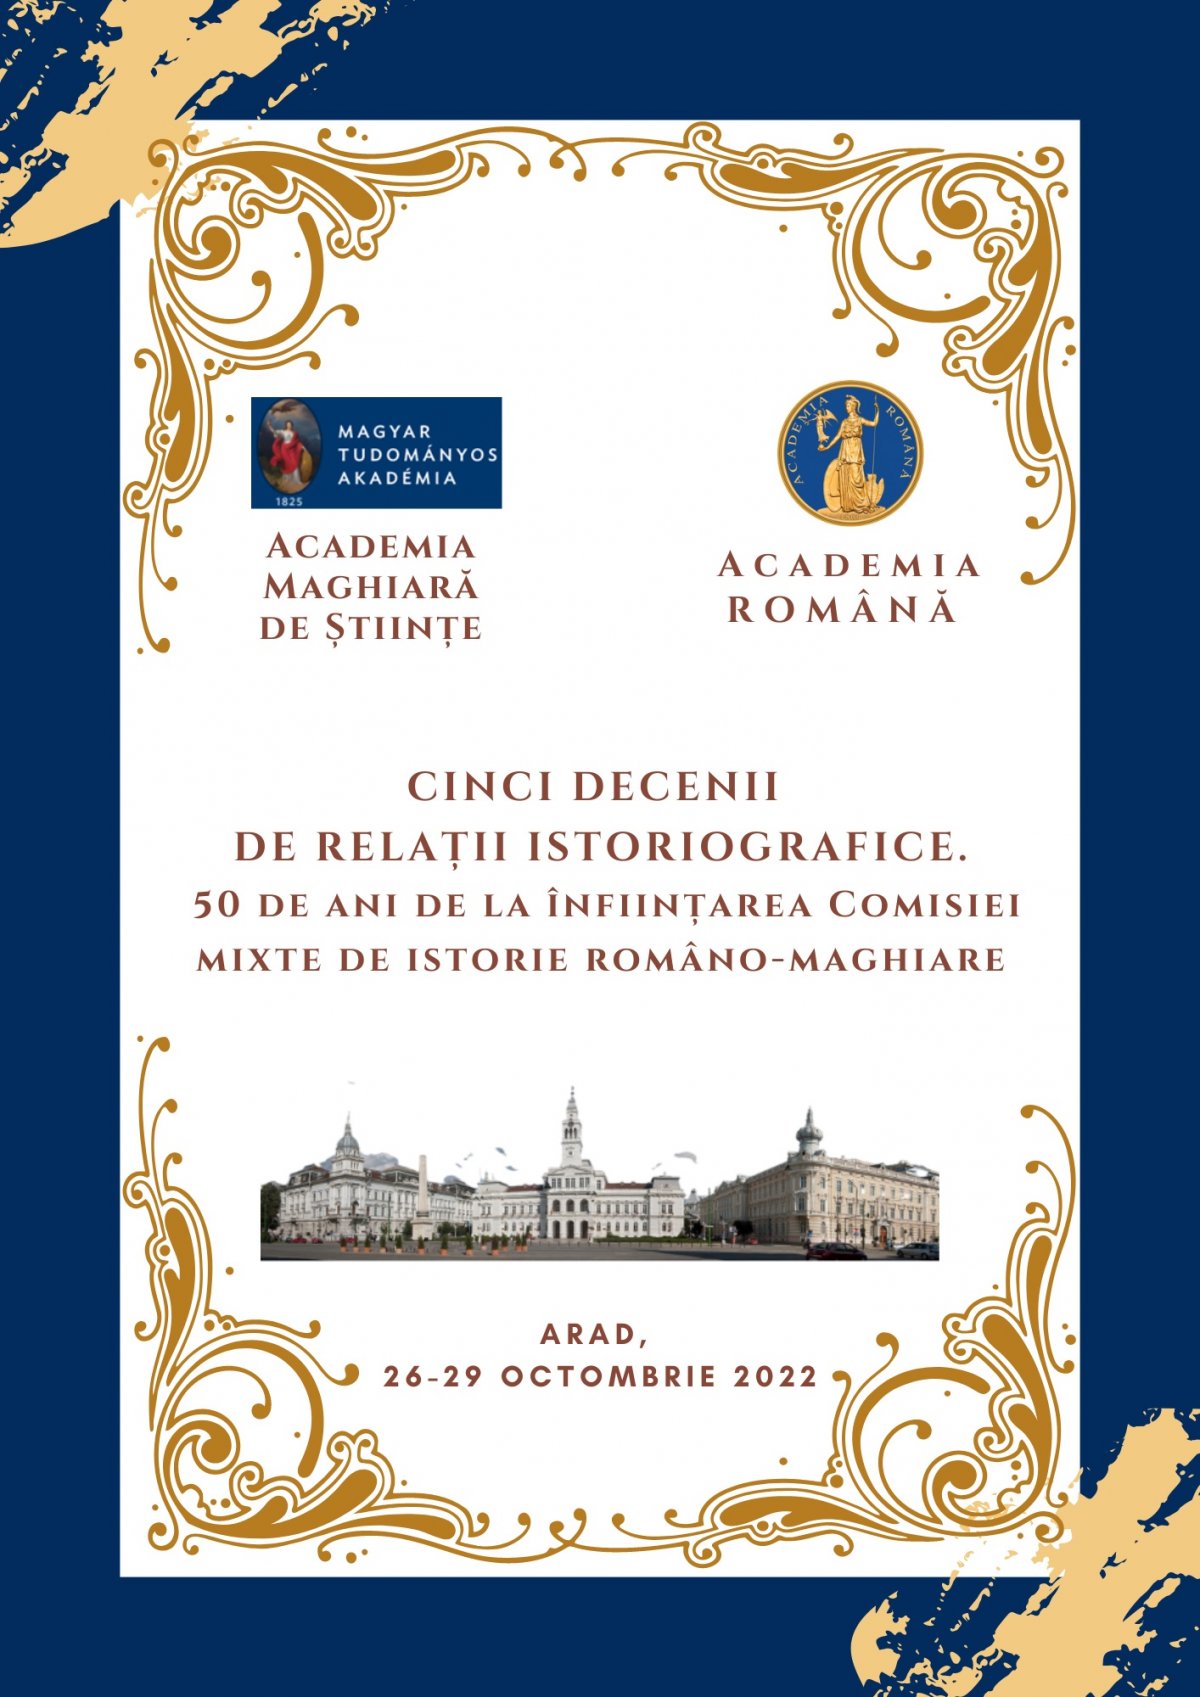  Cinci decenii de relații istoriografice. 50 de ani de la înființarea comisiei mixte de istorie româno-maghiare, sărbătoriți la Arad